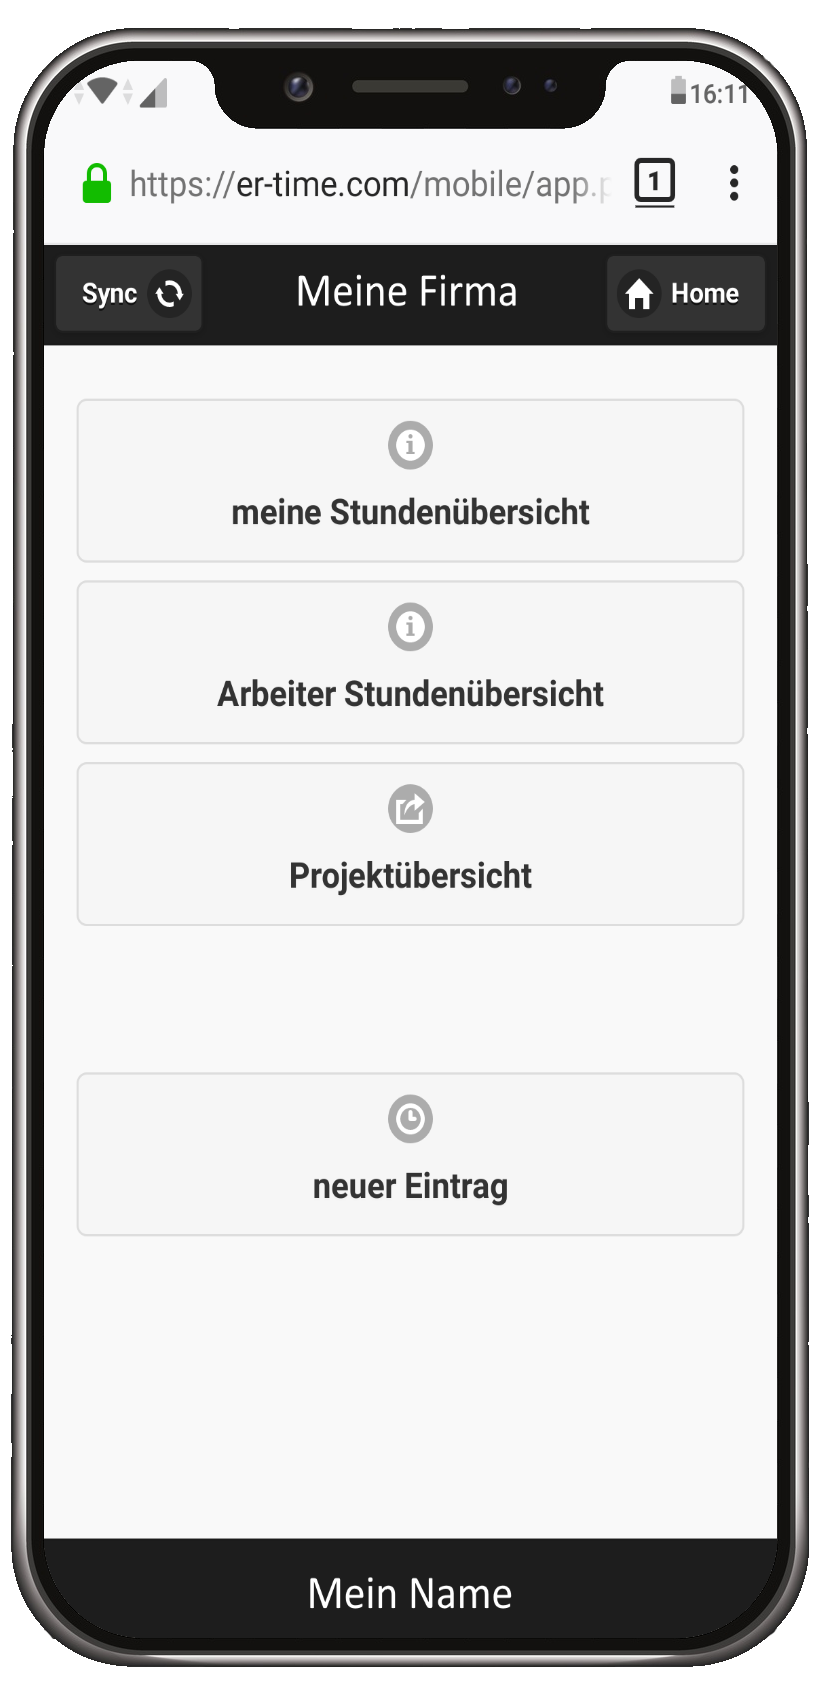 Mobile Web-App Zeiterfassung